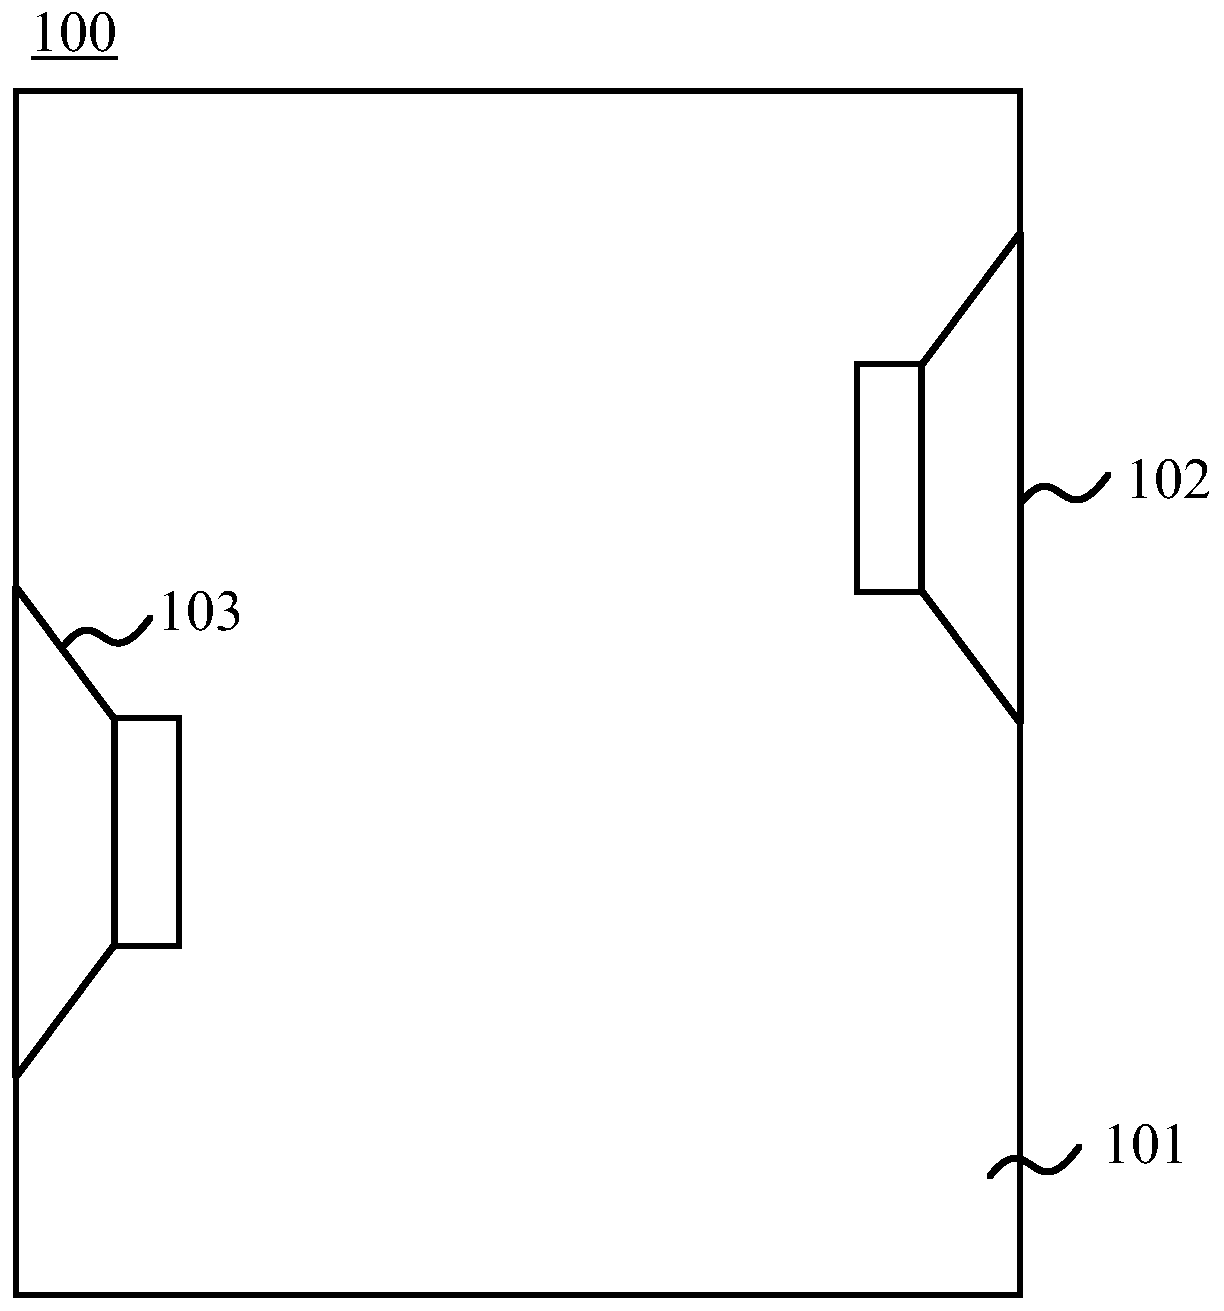 Loudspeaker and control method applied to loudspeaker